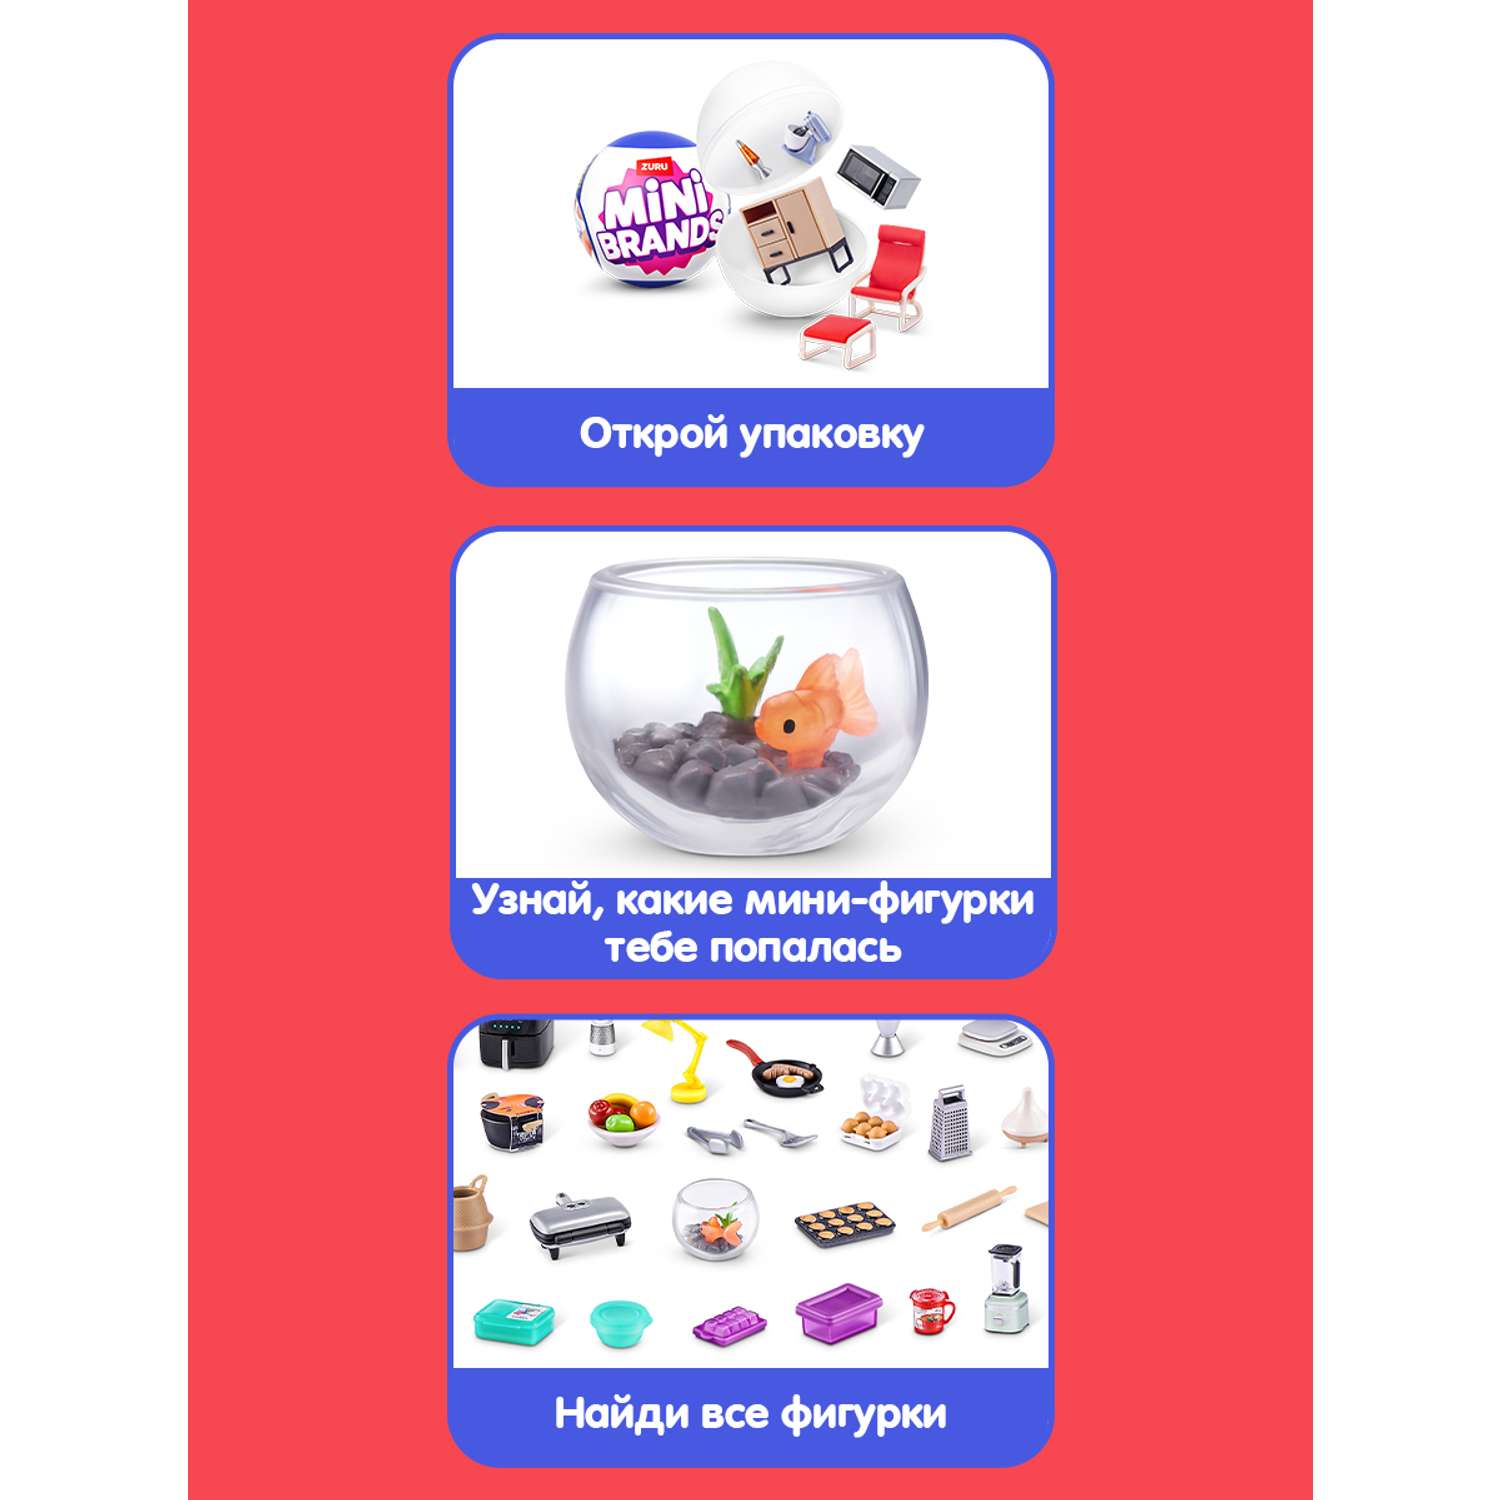 Игрушка Zuru 5 surprise Home mini Шар в непрозрачной упаковке (Сюрприз) 77555GQ1-S002 - фото 2